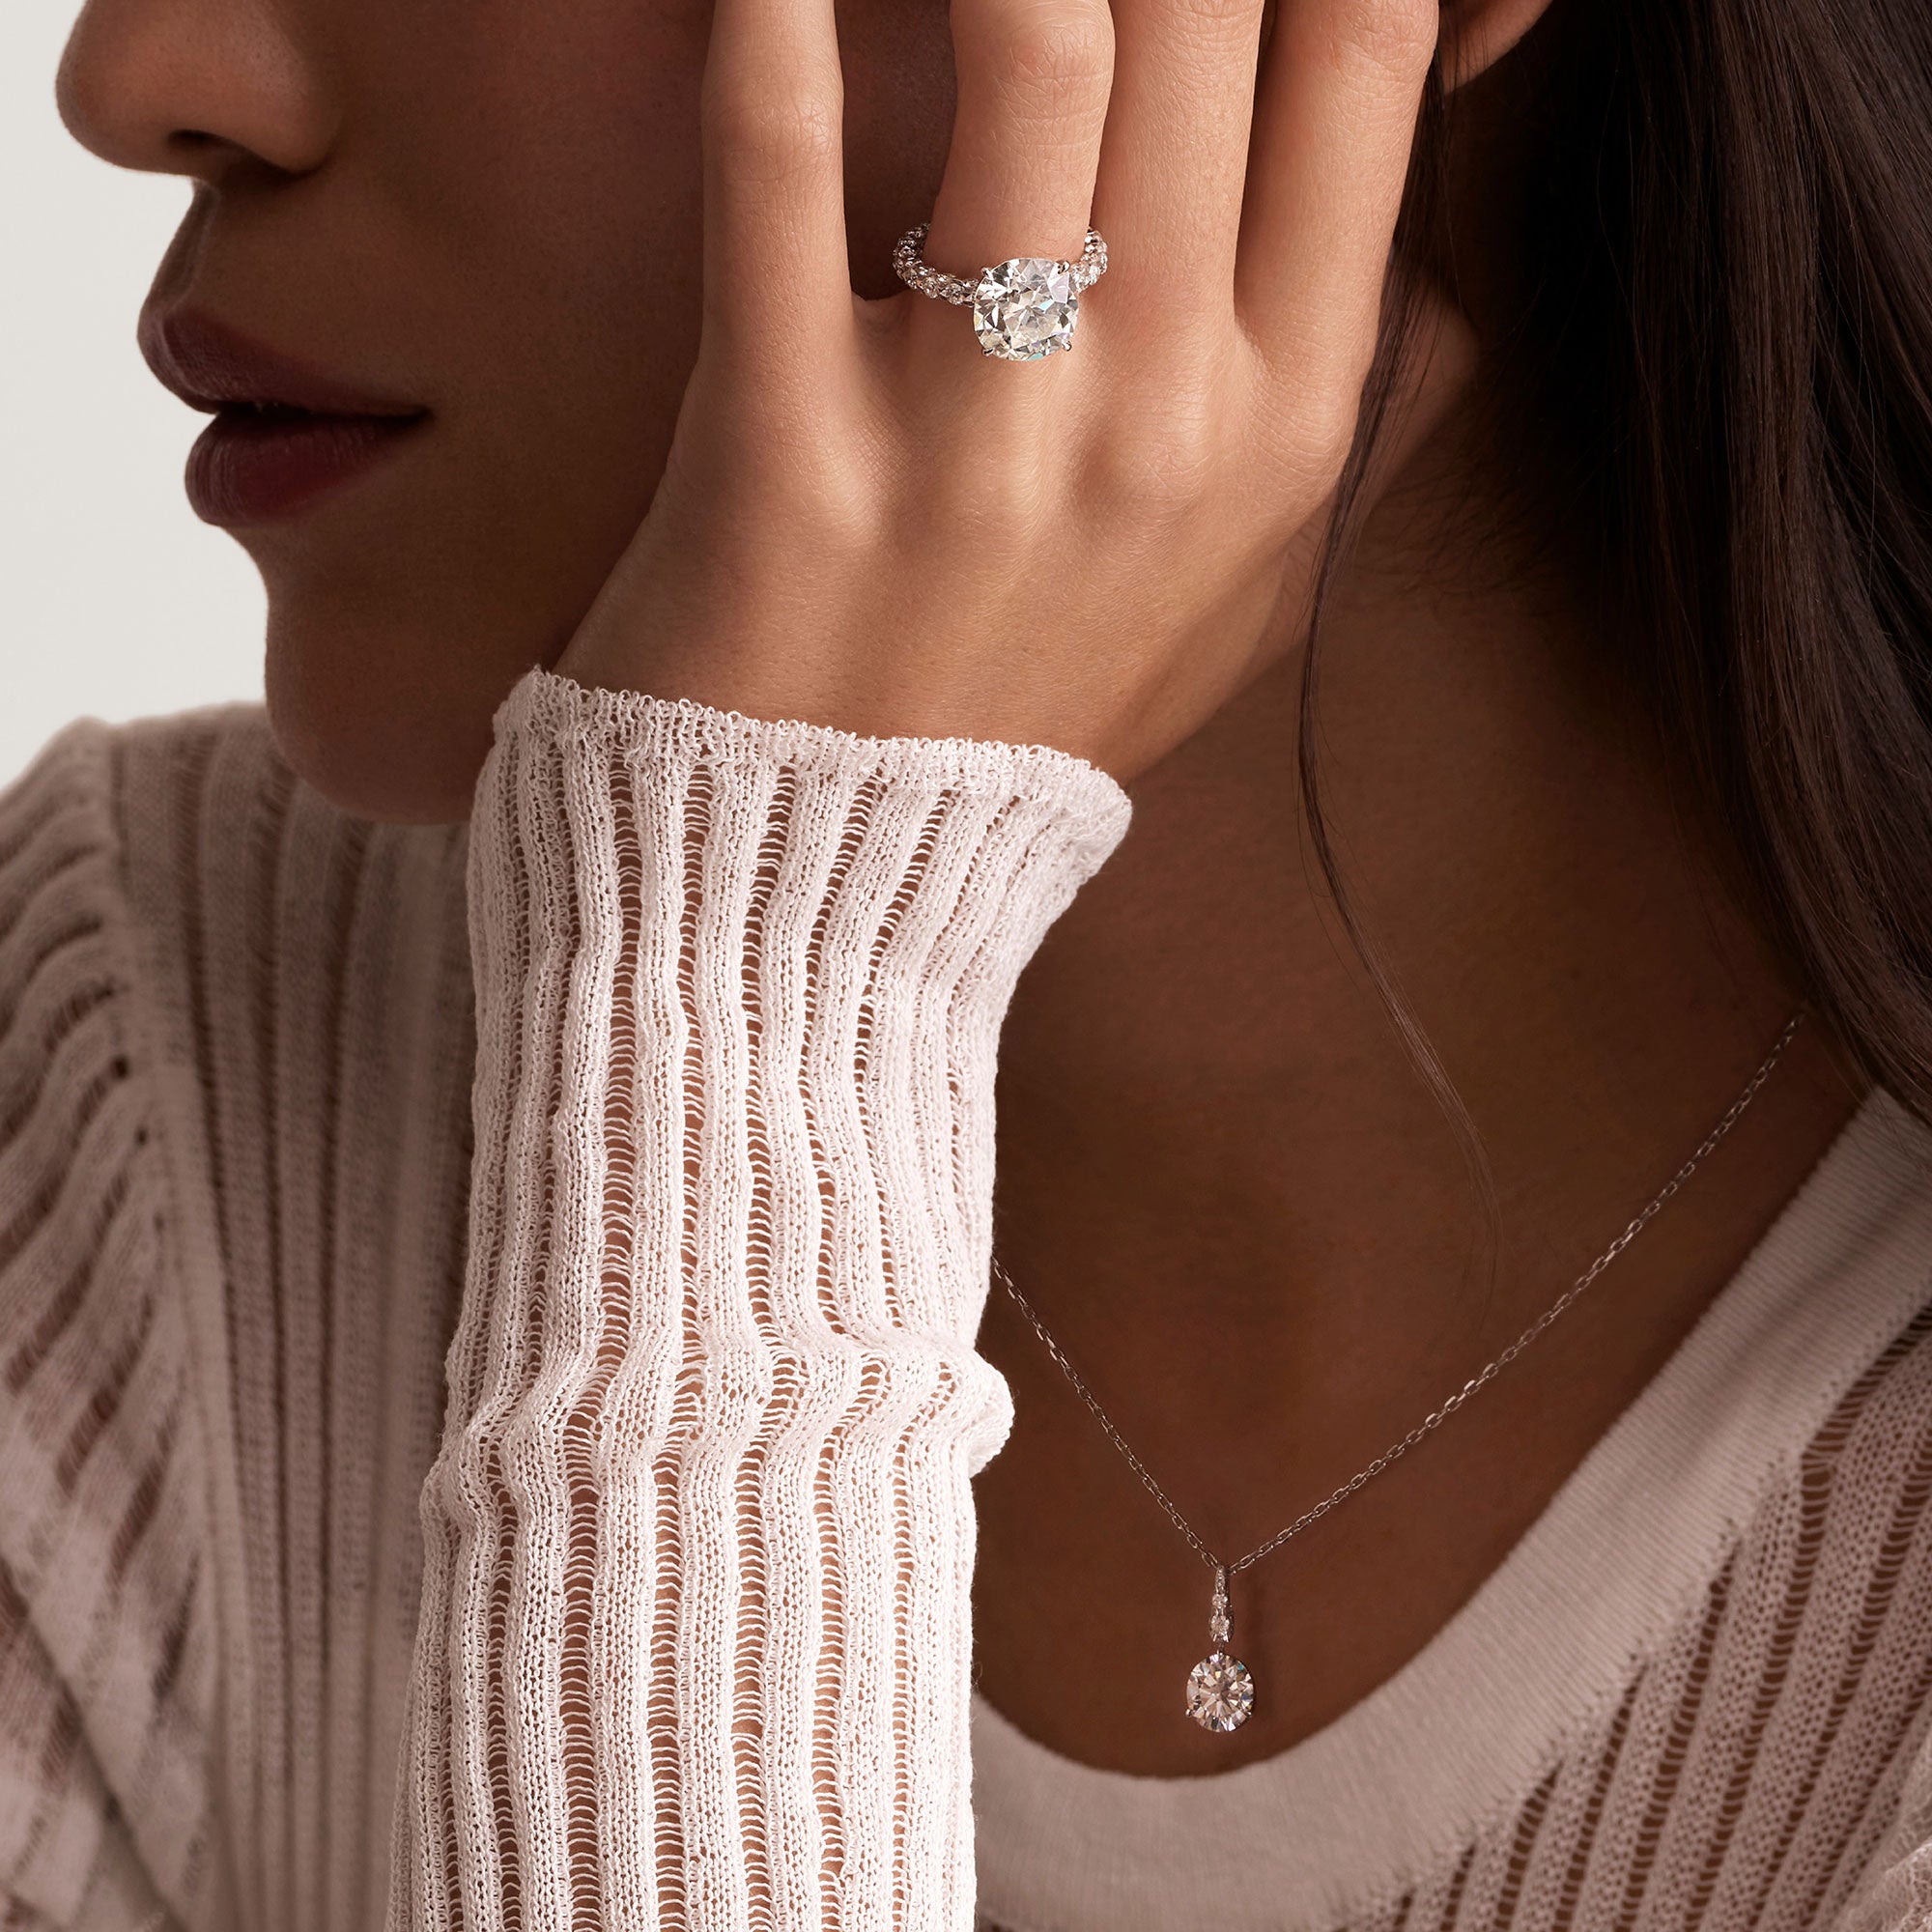 Merveilles Bridal - Diamond Necklace